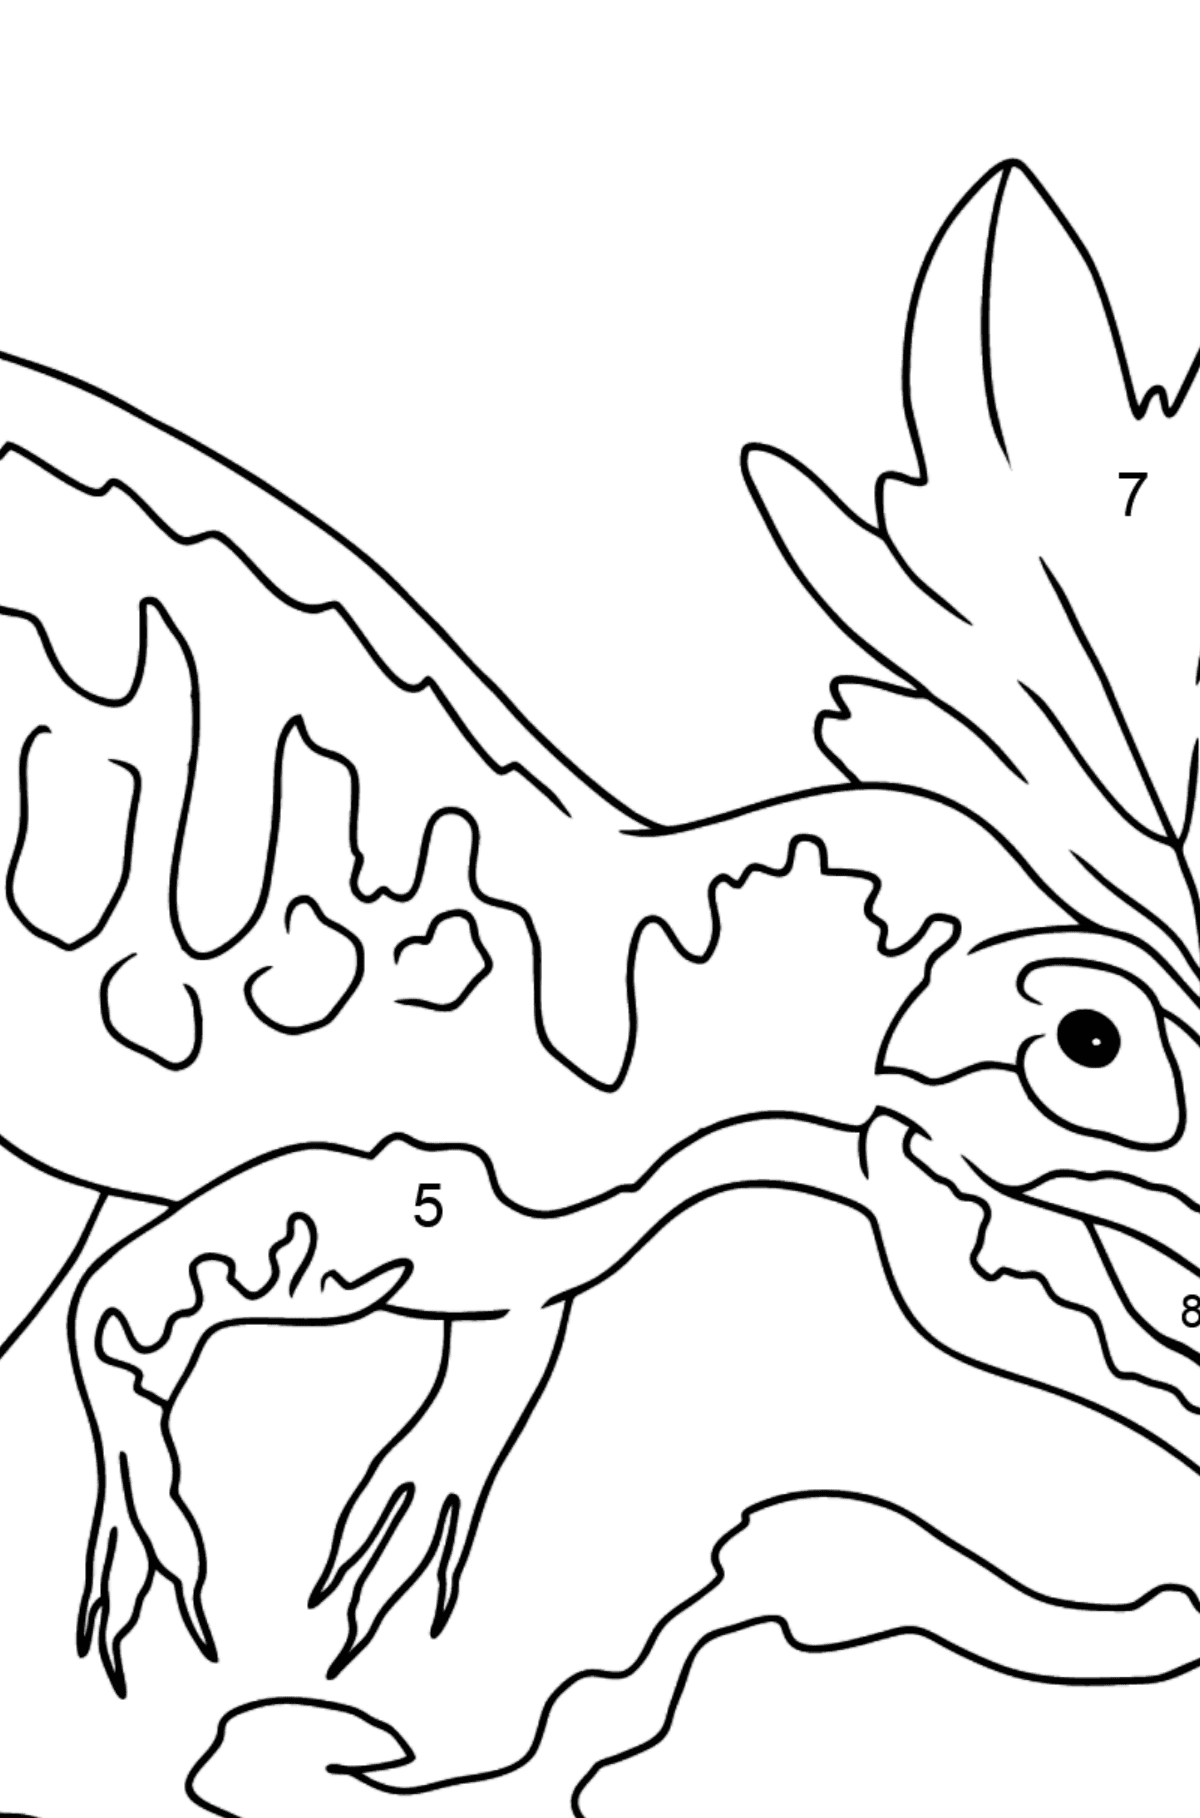 Dibujo para colorear de alosaurio (fácil) - Colorear por Números para Niños